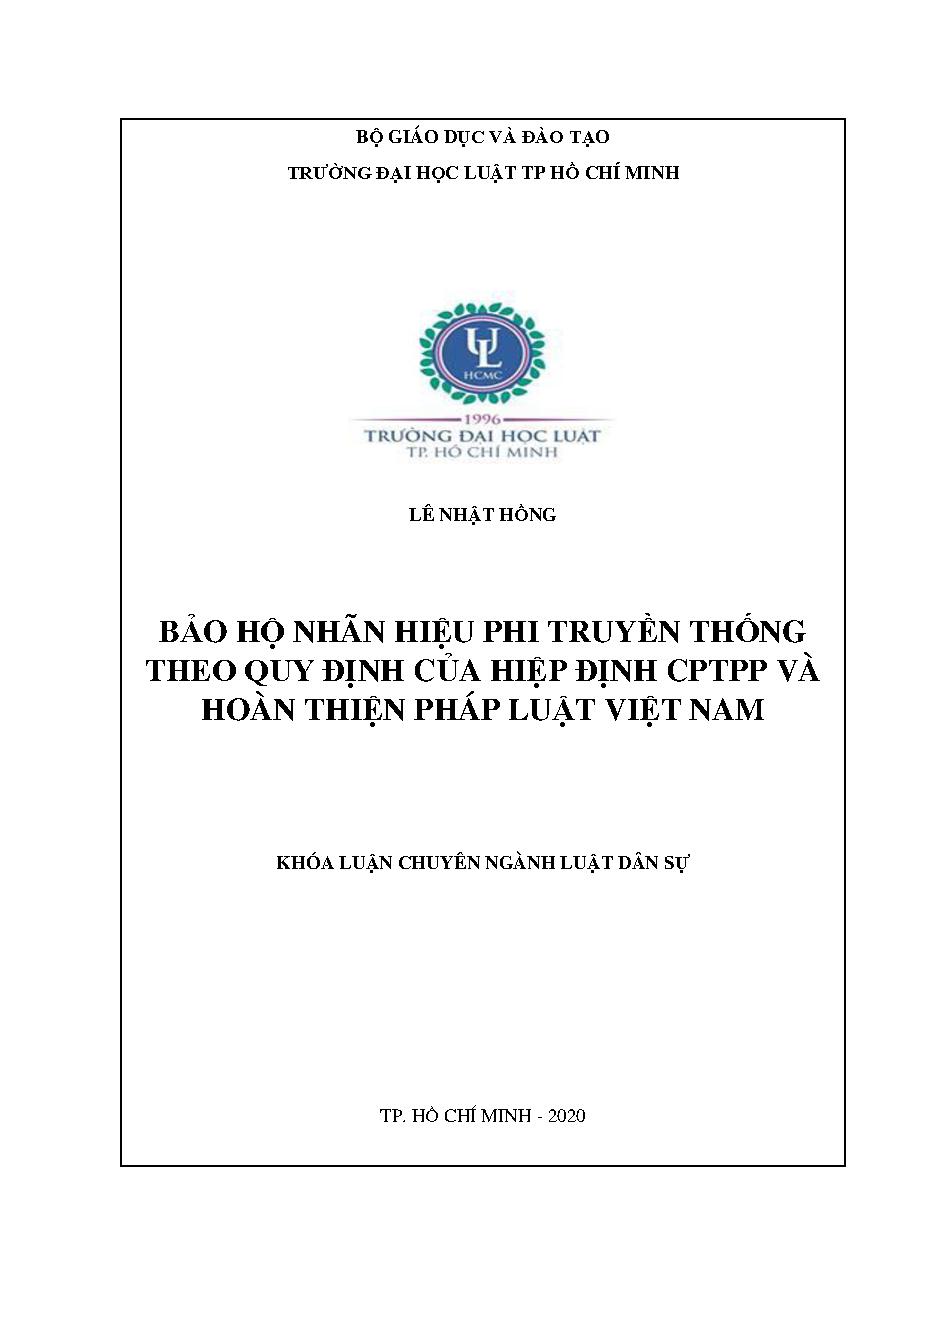 Bảo hộ nhãn hiệu phi truyền thống theo quy định của Hiệp định CPTPP và hoàn thiện pháp luật Việt Nam